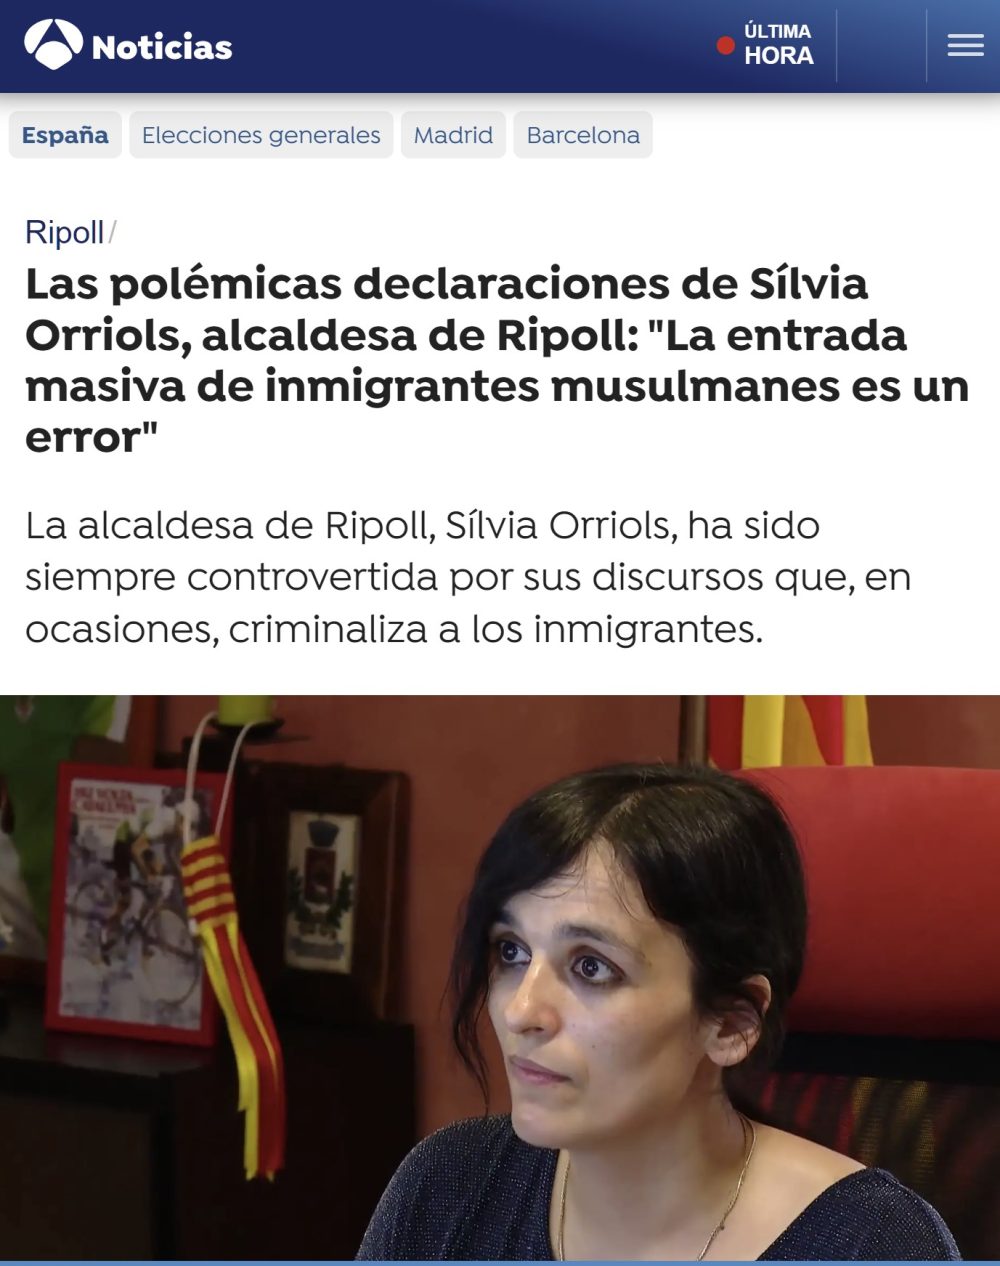 Silvia Orriols, alcaldesa de Ripoll: "Catalana seguro, islamófoba, probablemente también"